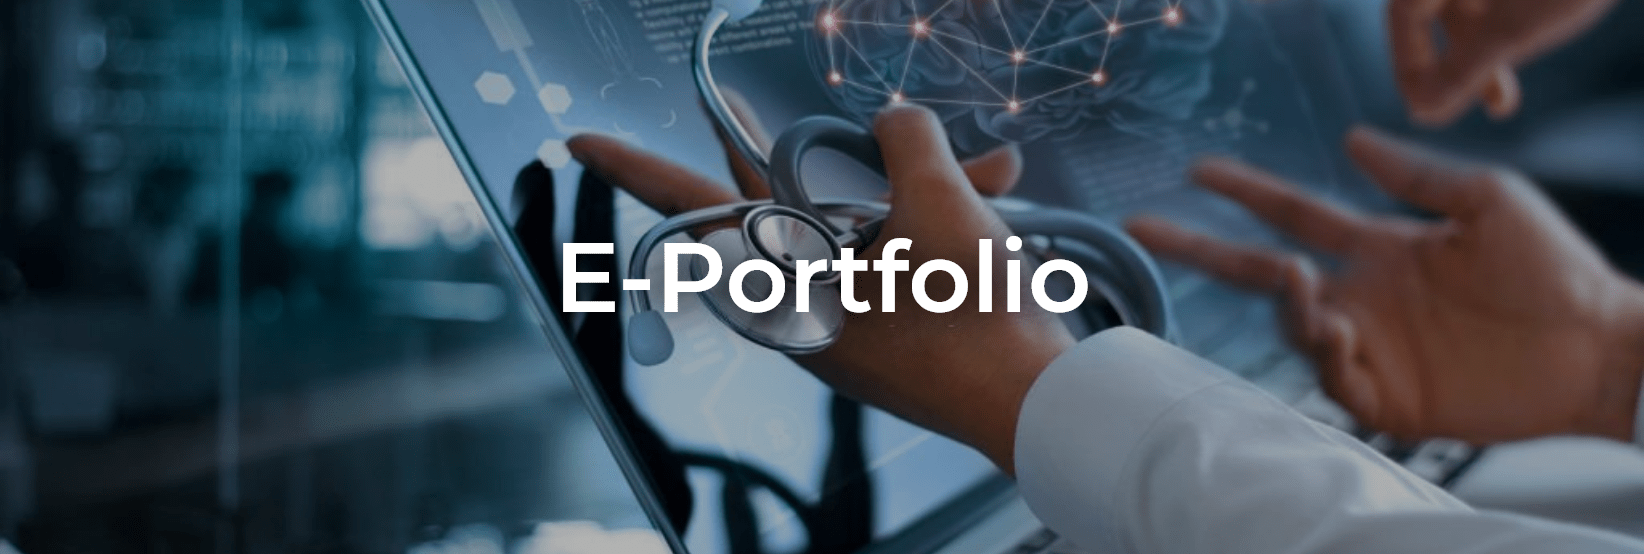 e-portfolio